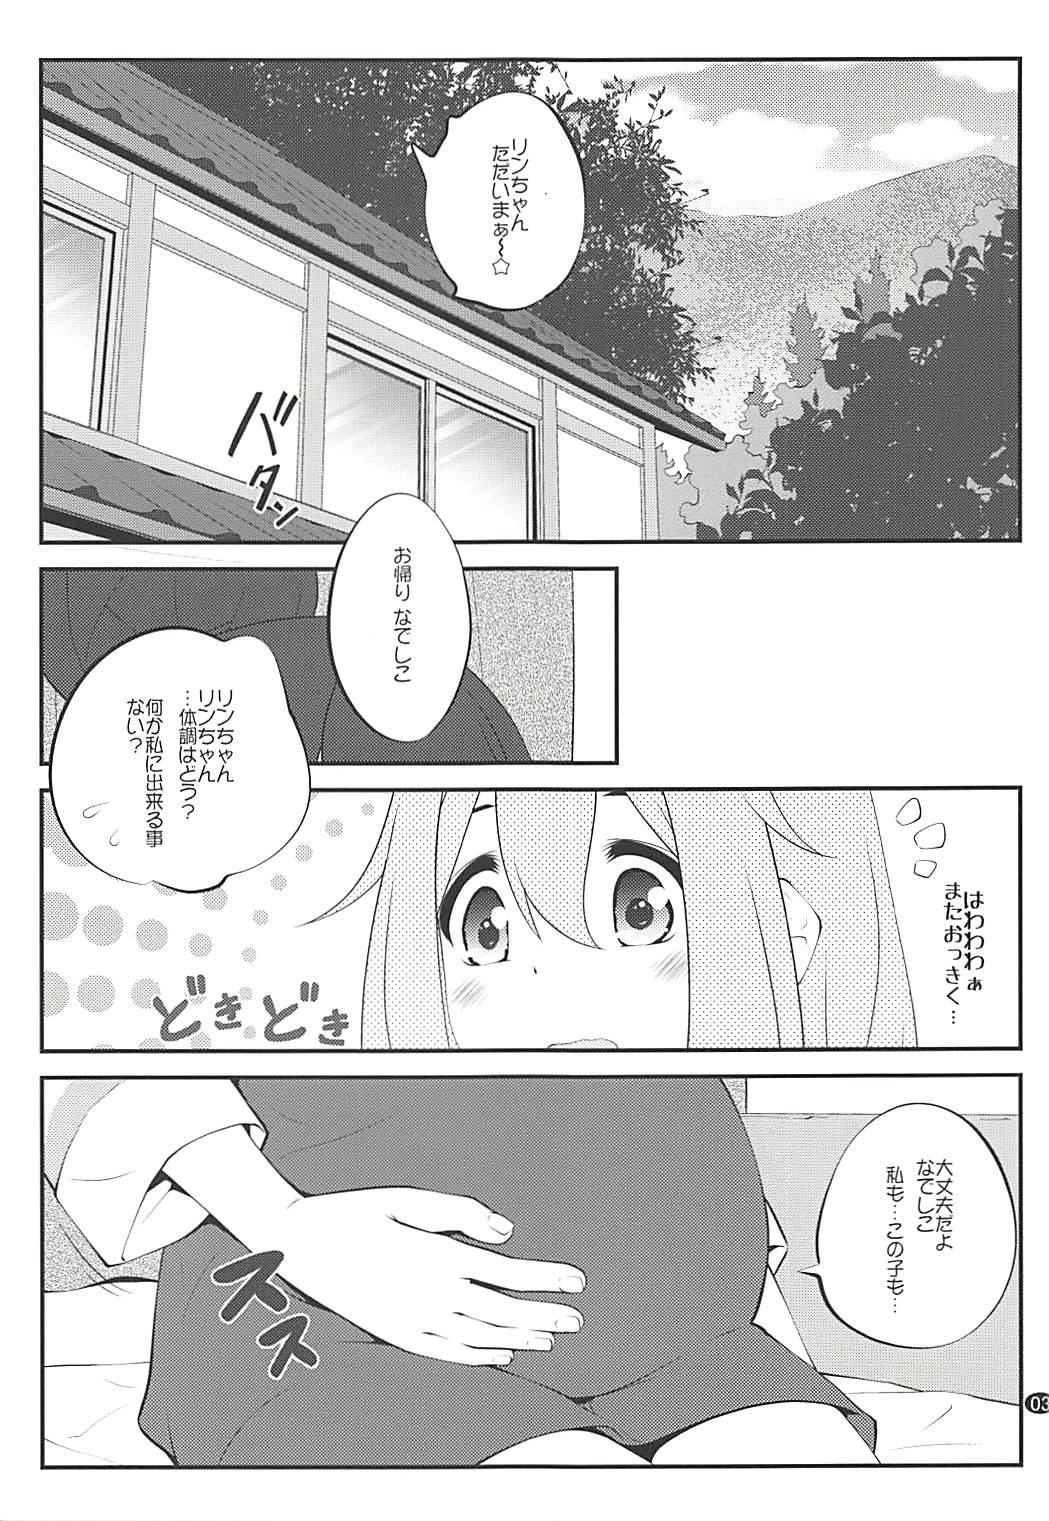 Bubblebutt Sankakkei no, Himitsu - Yuru camp Jockstrap - Page 2